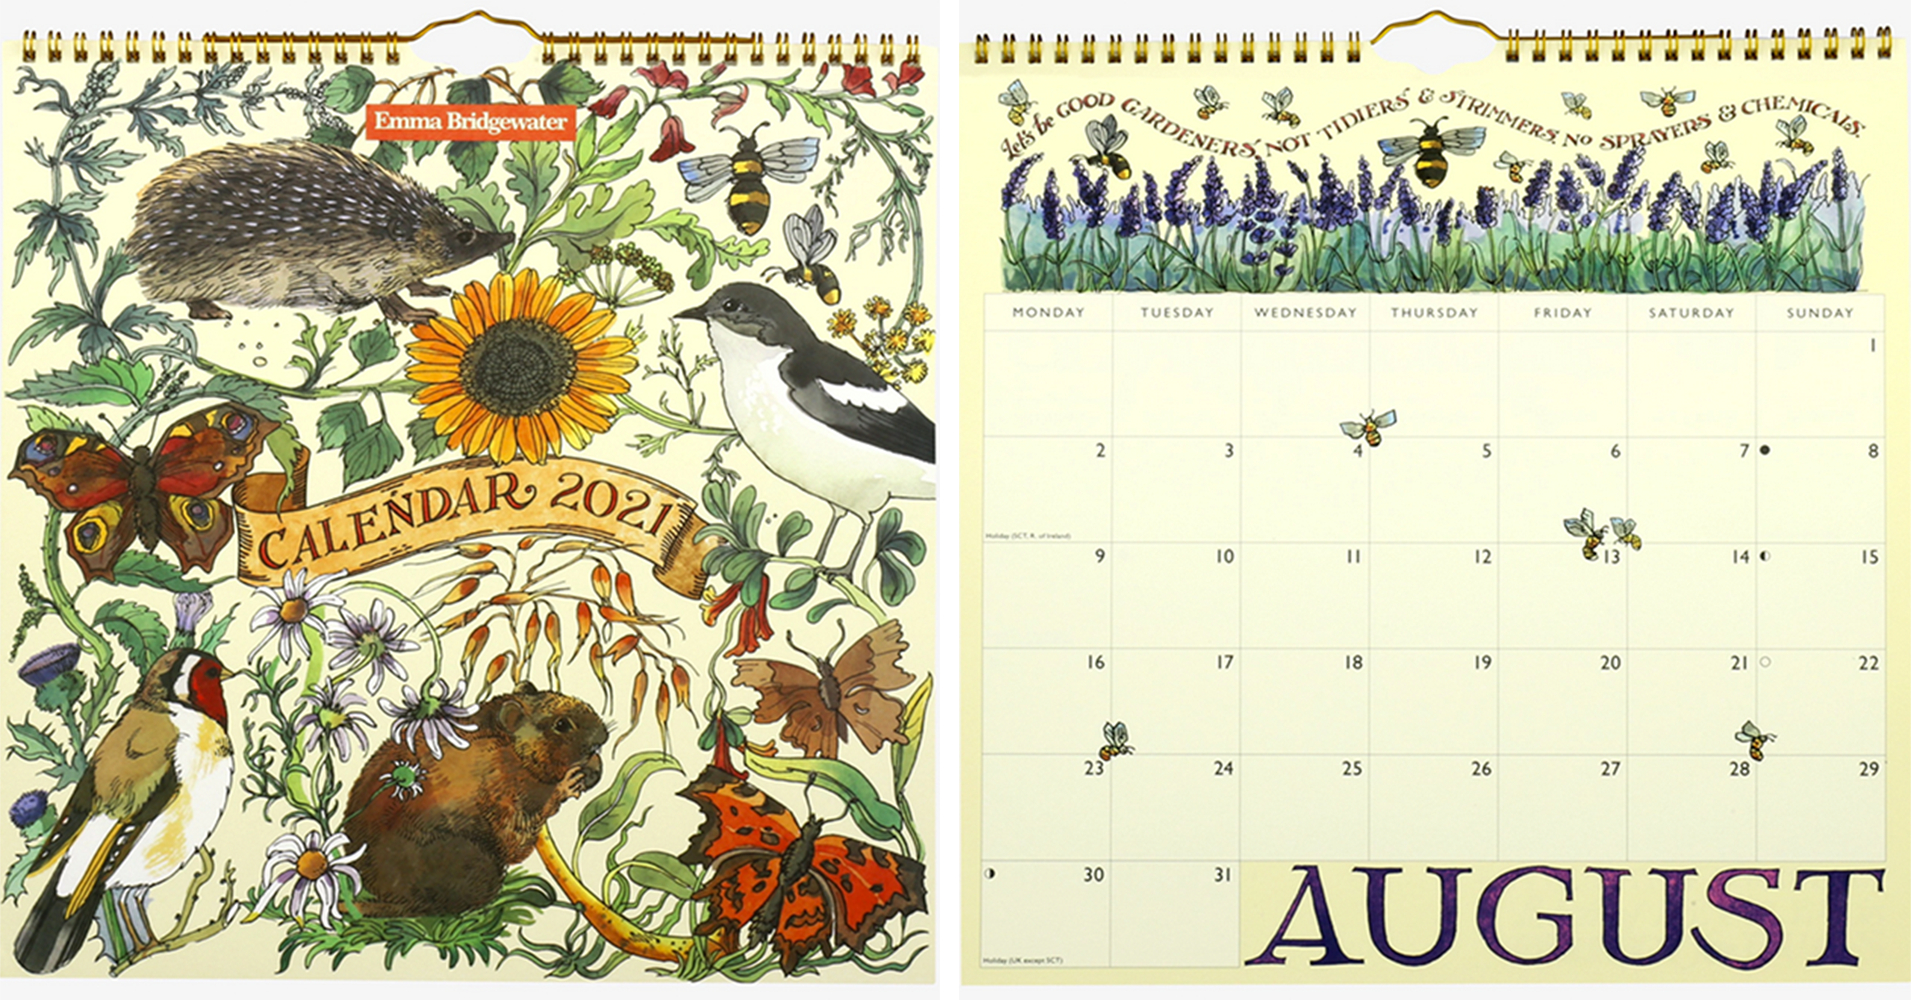 2021 Calendars For Gardeners - The English Garden